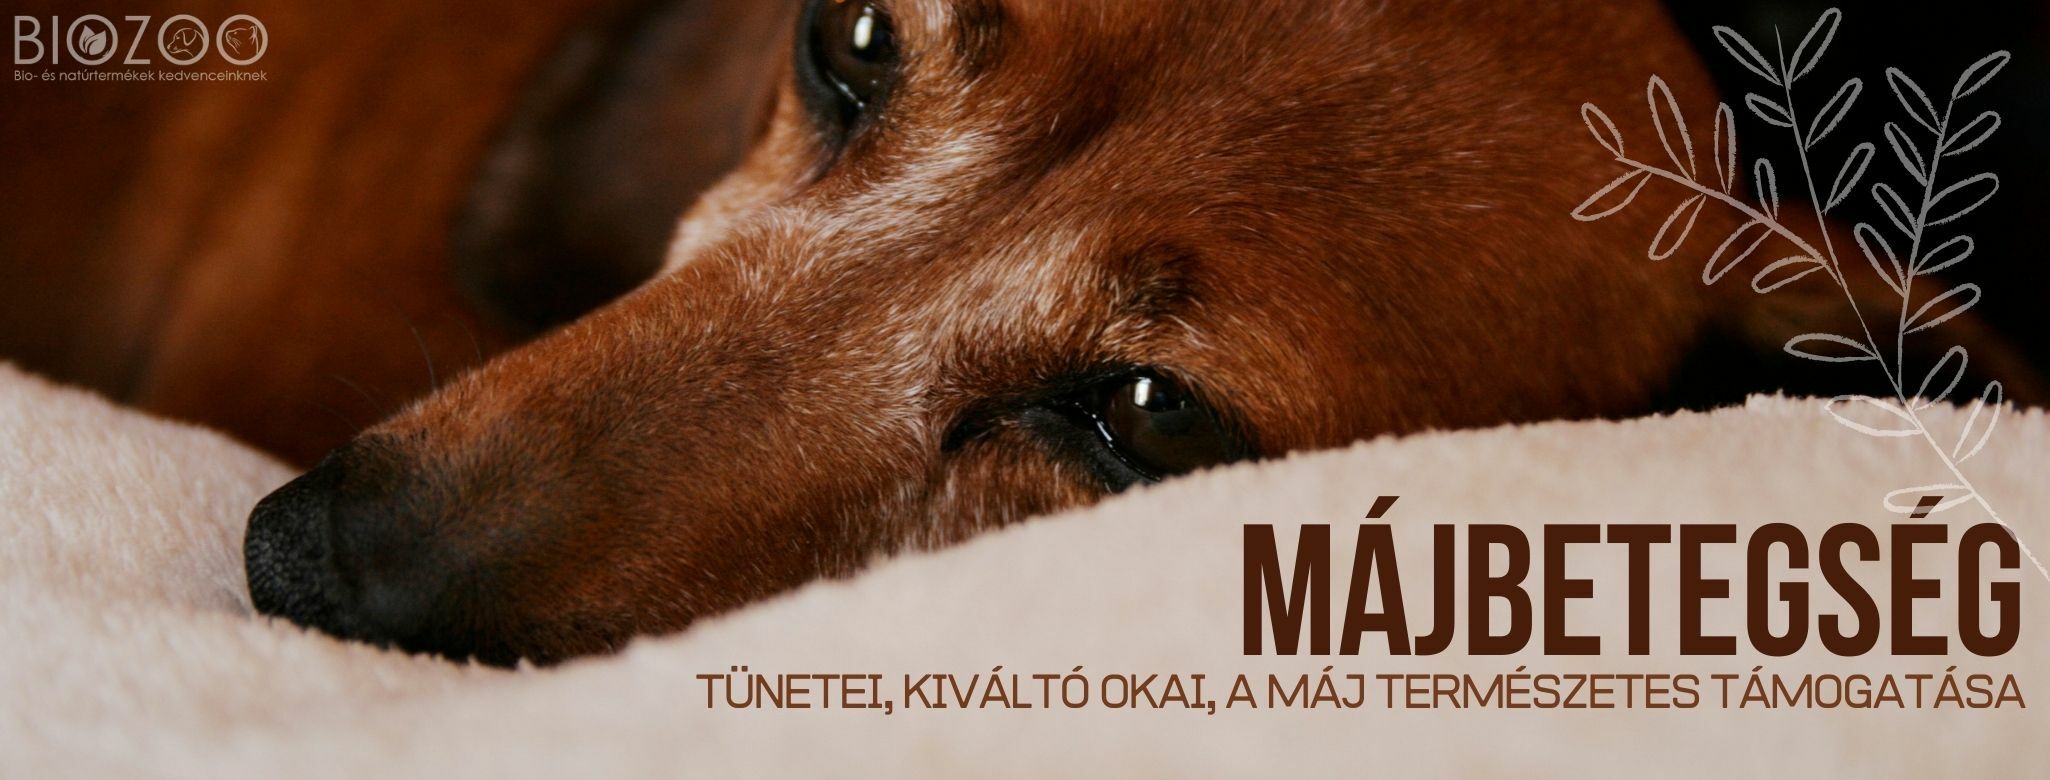 Májbetegség kutyáknál - tünetei, kialakulás lehetséges okai, természetes kezelése